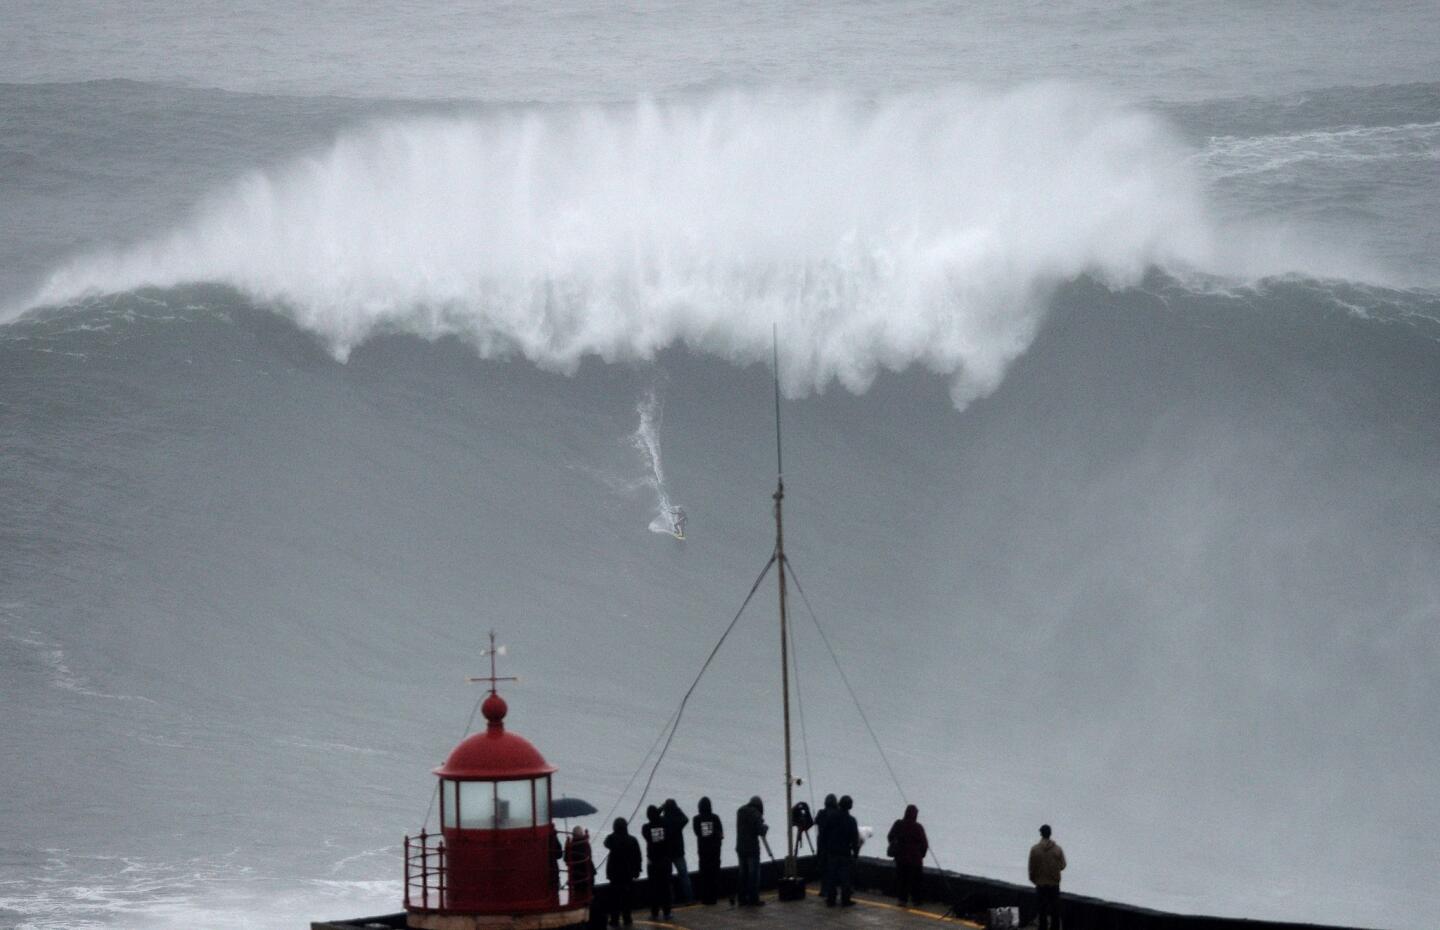 Big wave surfing